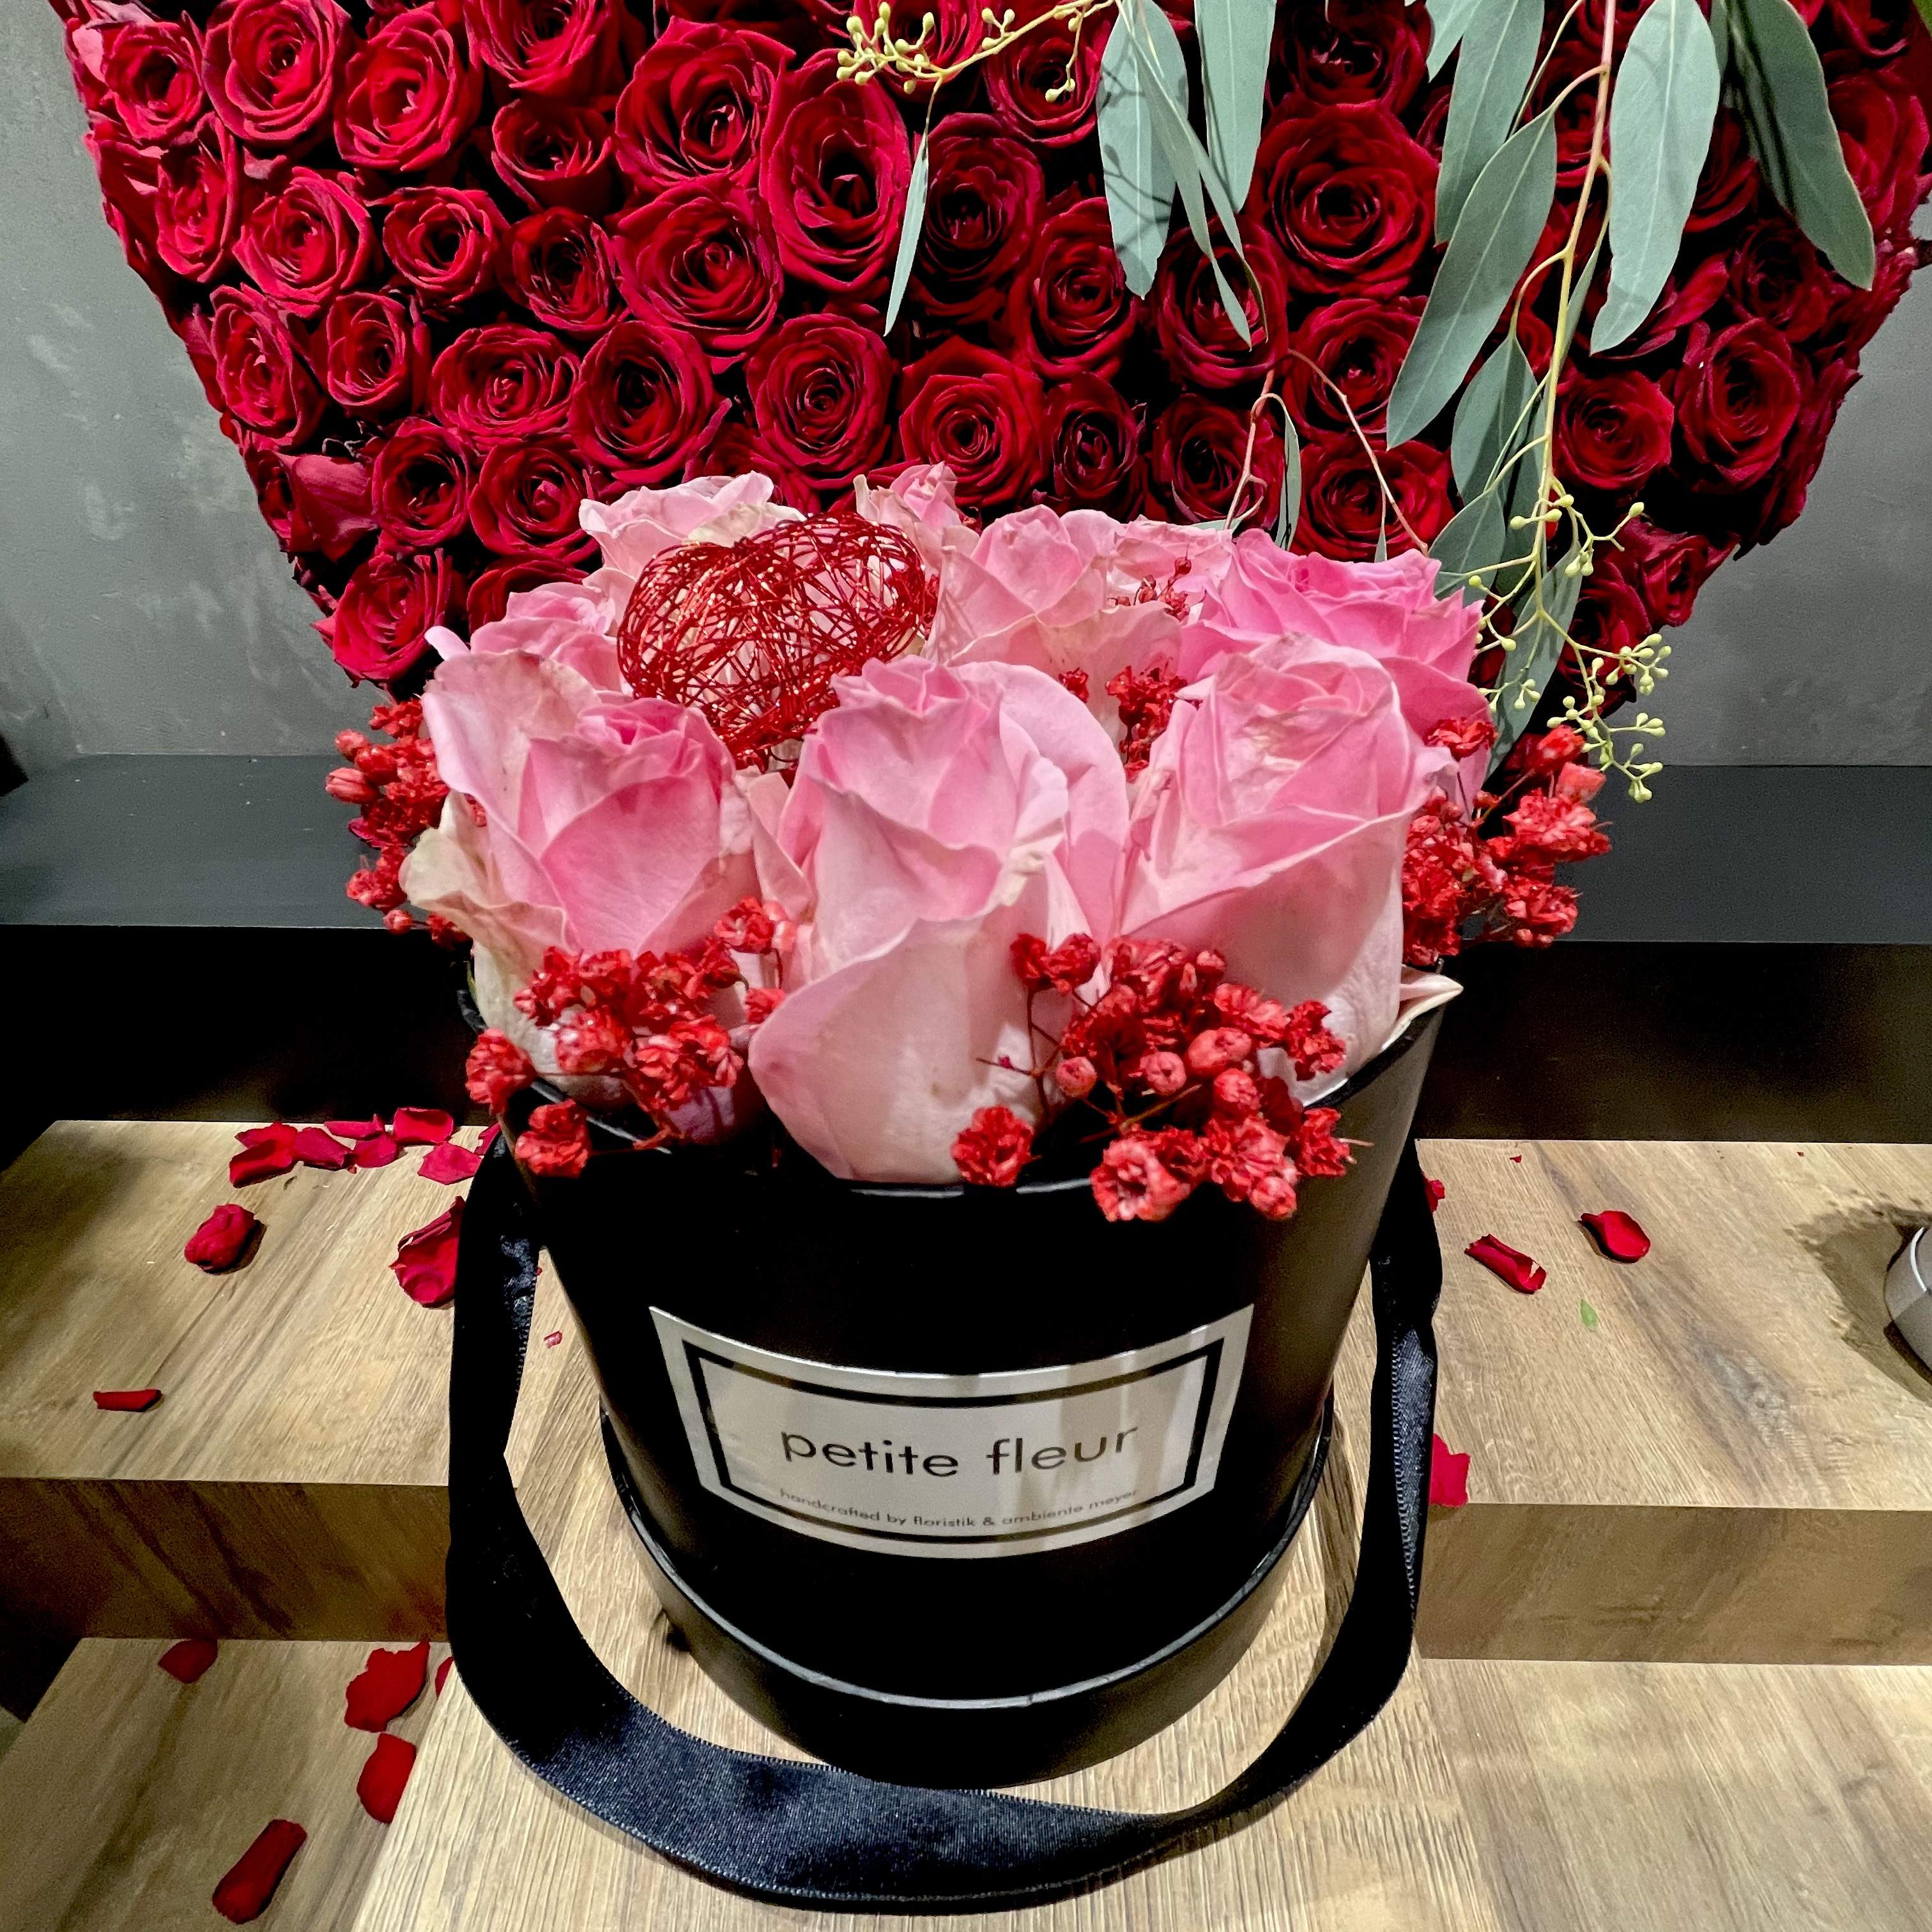 Petite Fleur Flowerbox mit frischen Rosen 